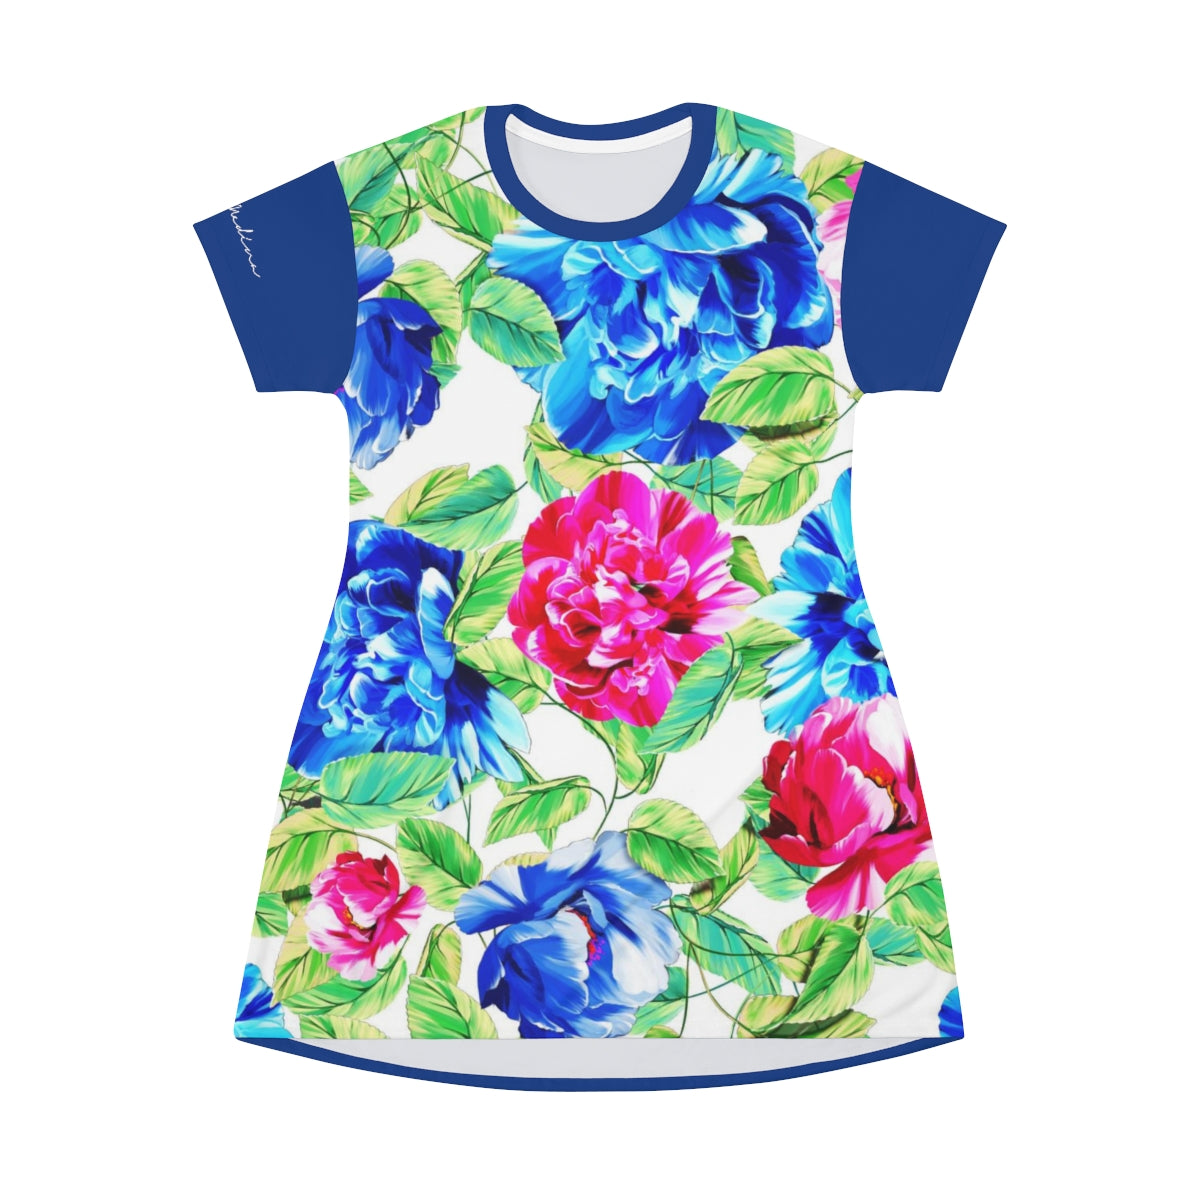 Shirtdress, Blue Floral Motive